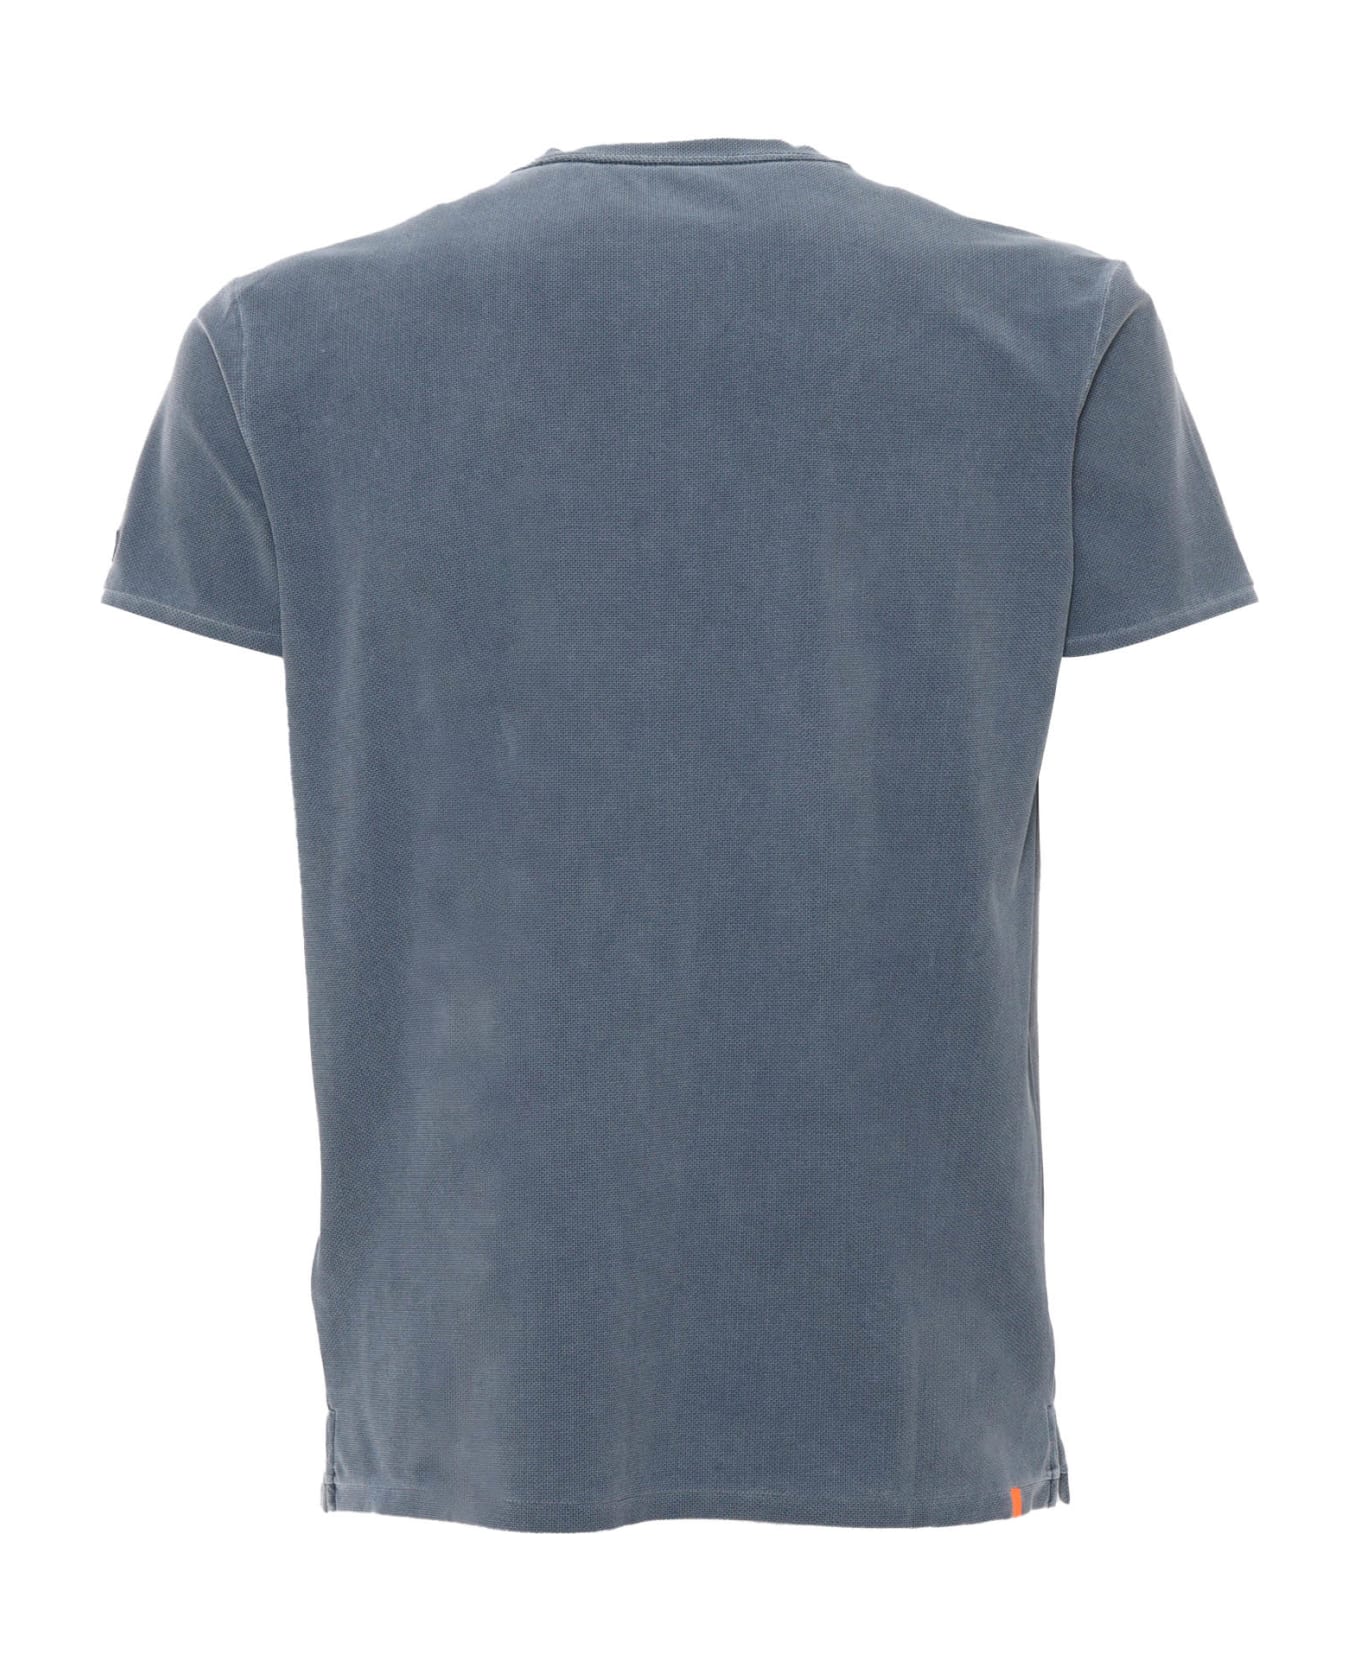 RRD - Roberto Ricci Design Gray Piquet T-shirt - GREY シャツ